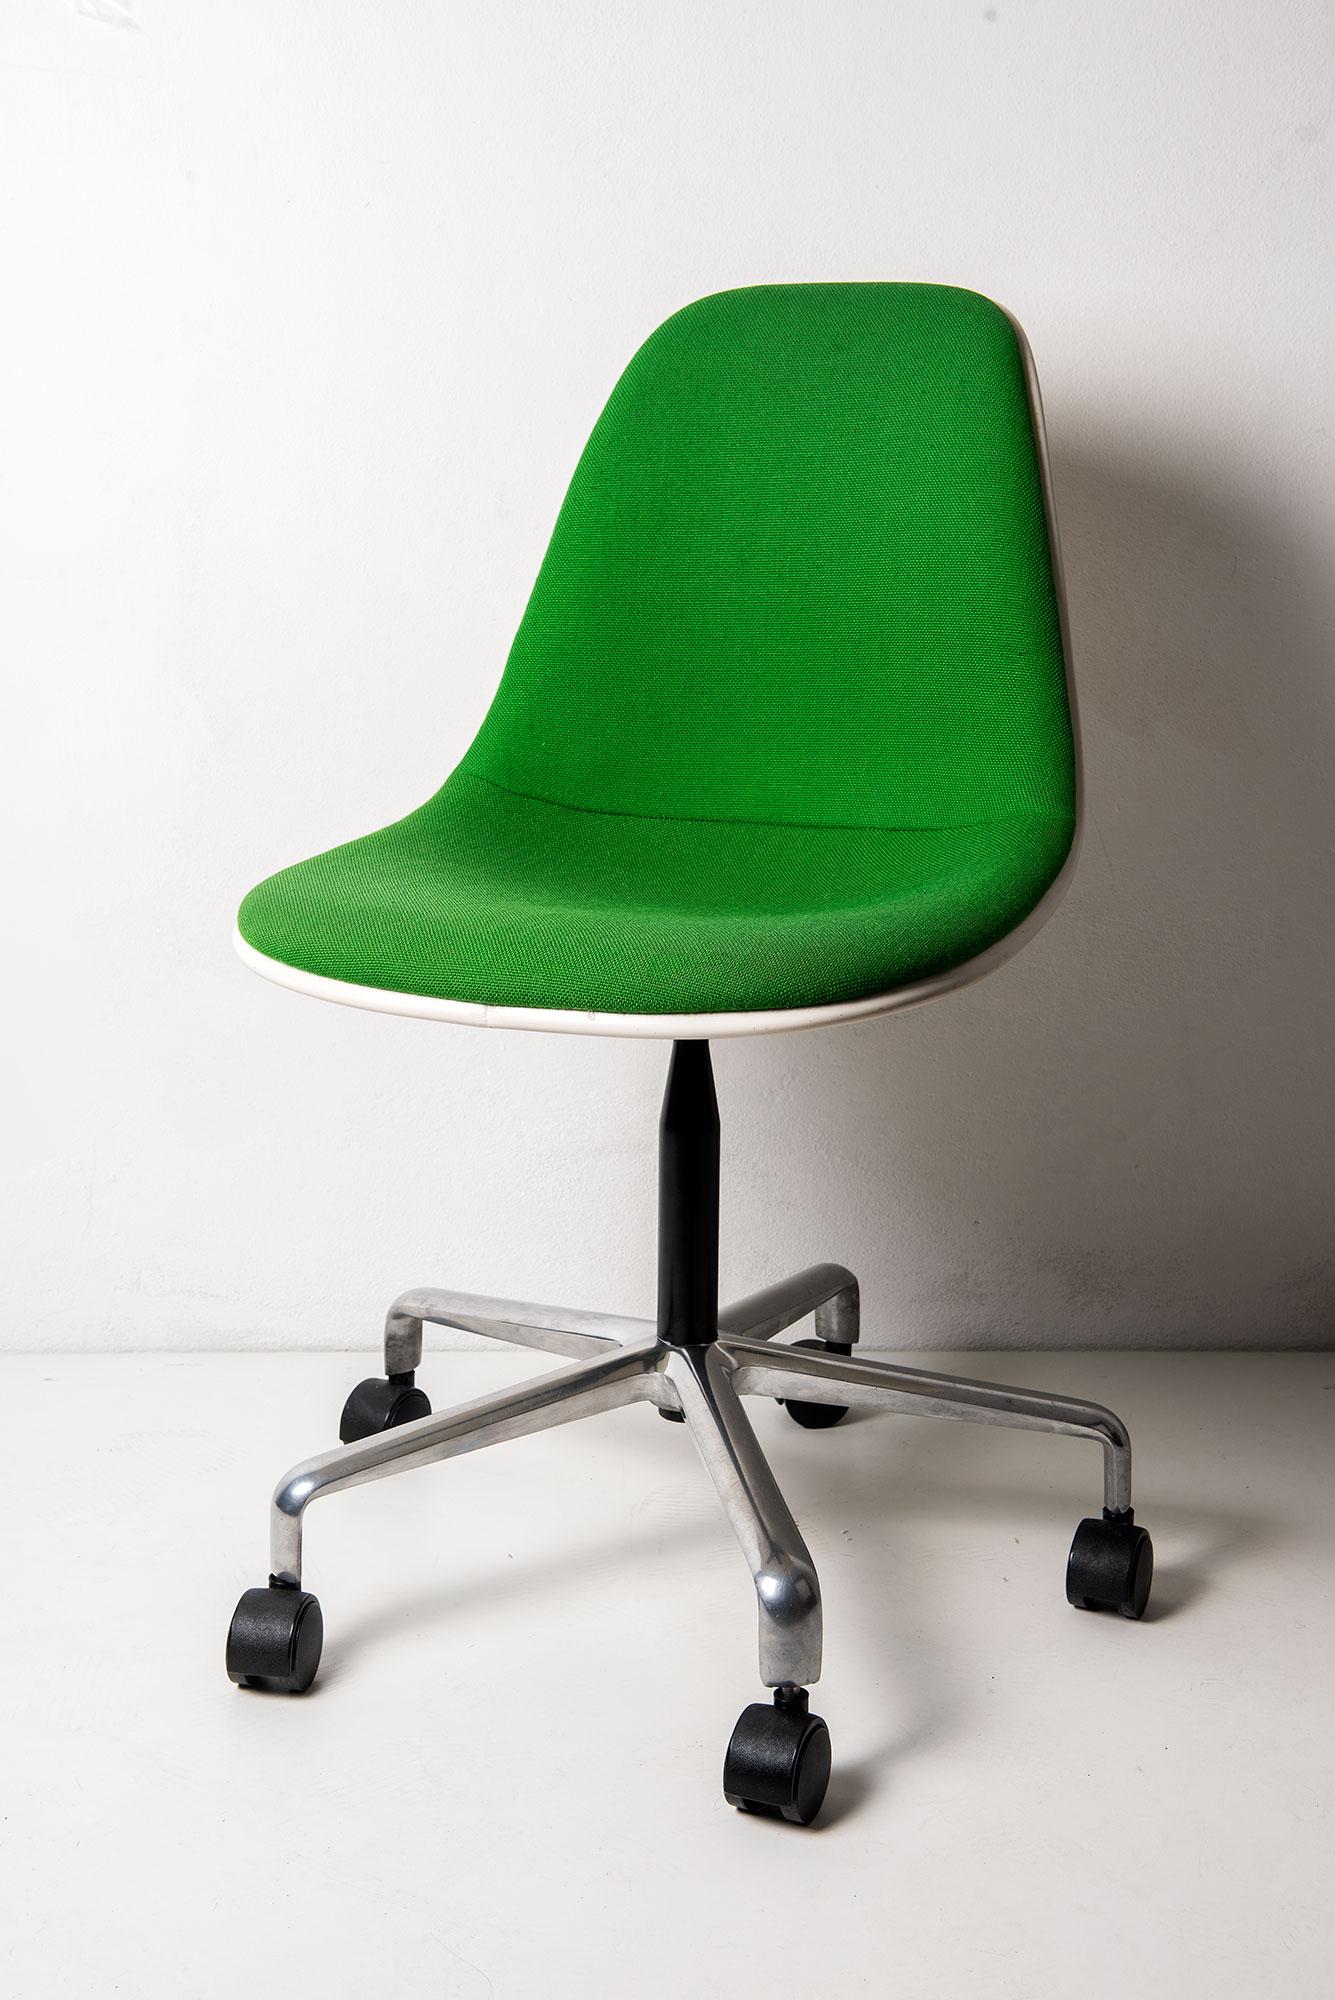 Rare chaise en fibre de verre PSCC de Charles et Ray Eames pour Herman Miller. 
Superbe sellerie verte bien entretenue.
Label et étiquette d'origine du revendeur.